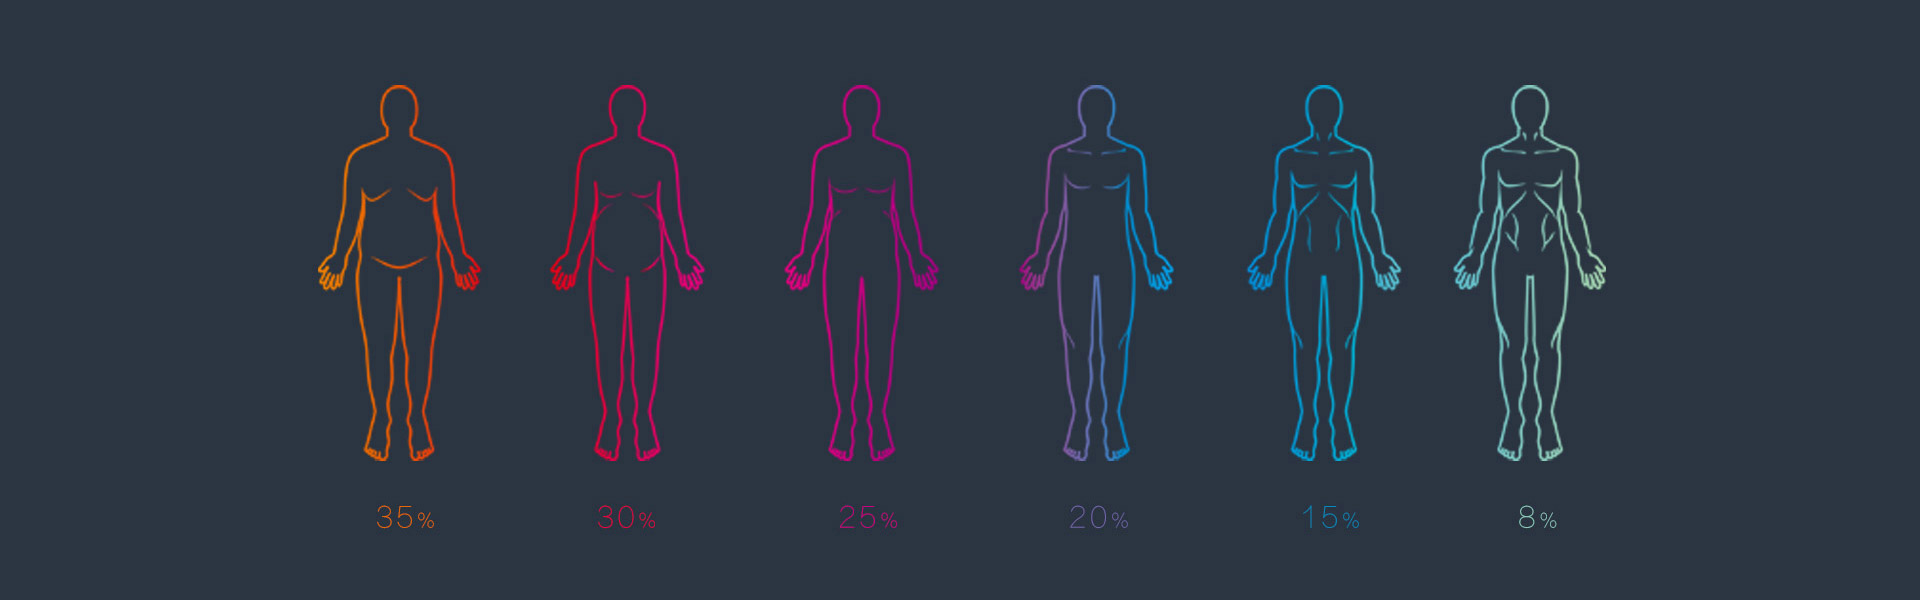 Porcentaje de grasa corporal y forma del cuerpo